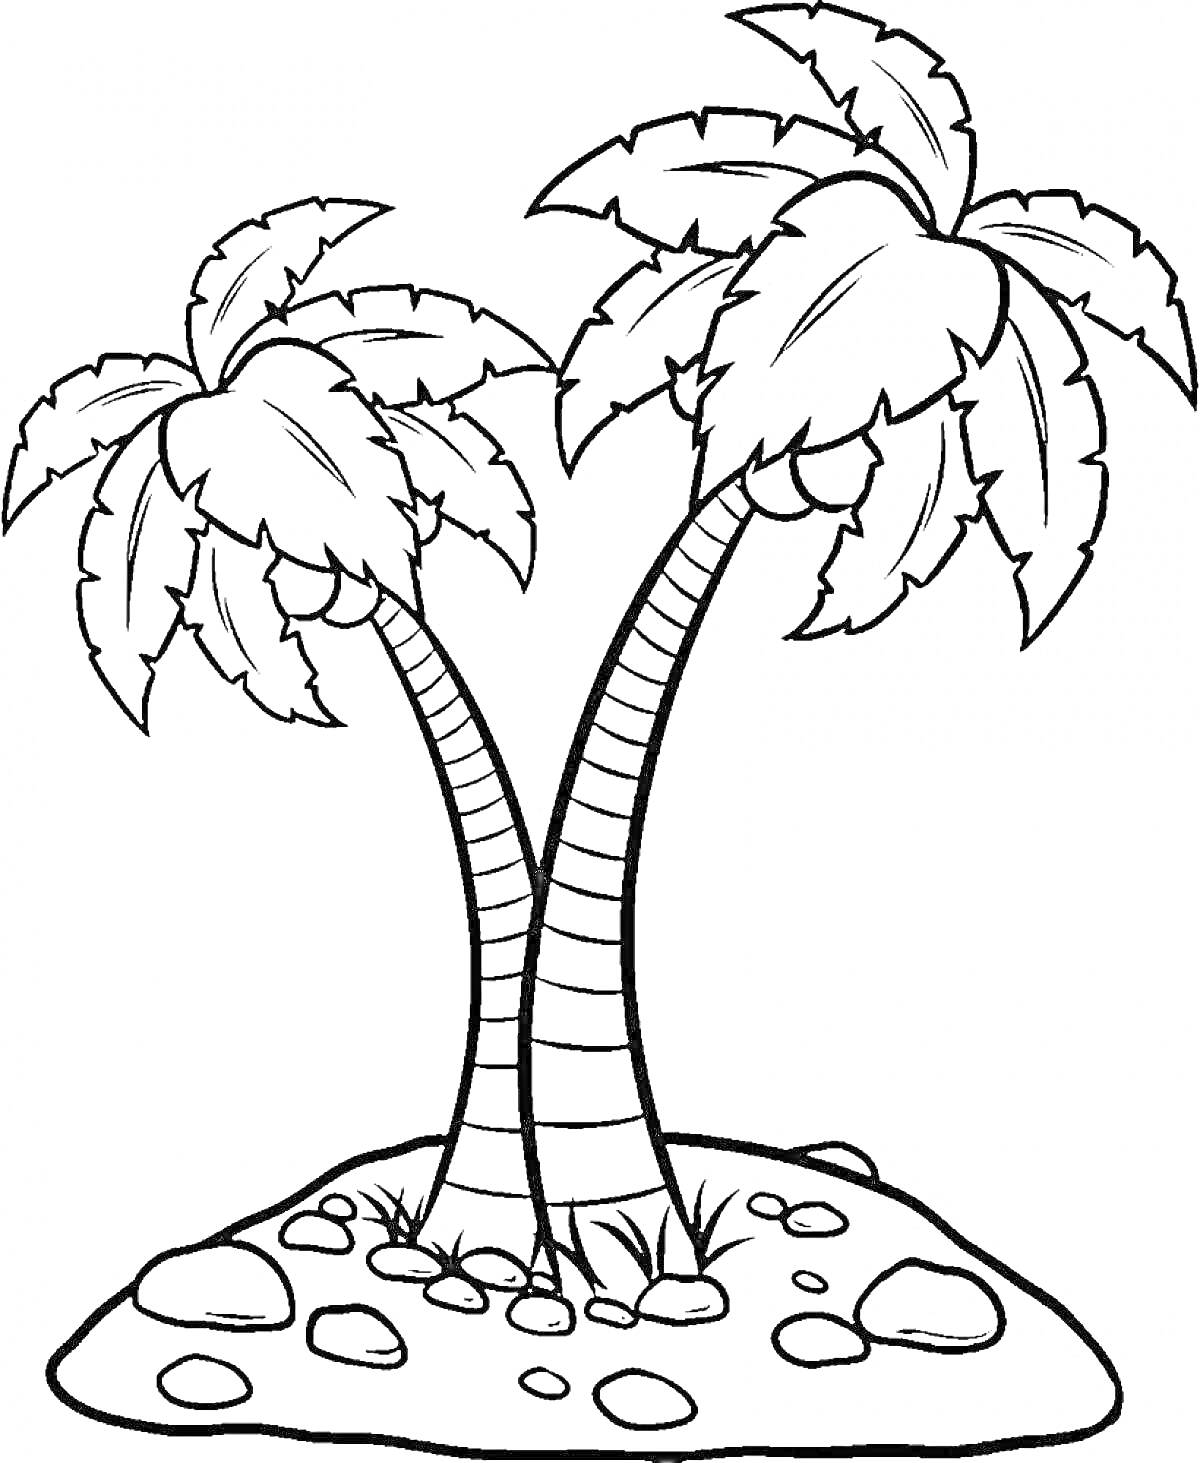 Раскраска Две пальмы на острове с камнями и травой